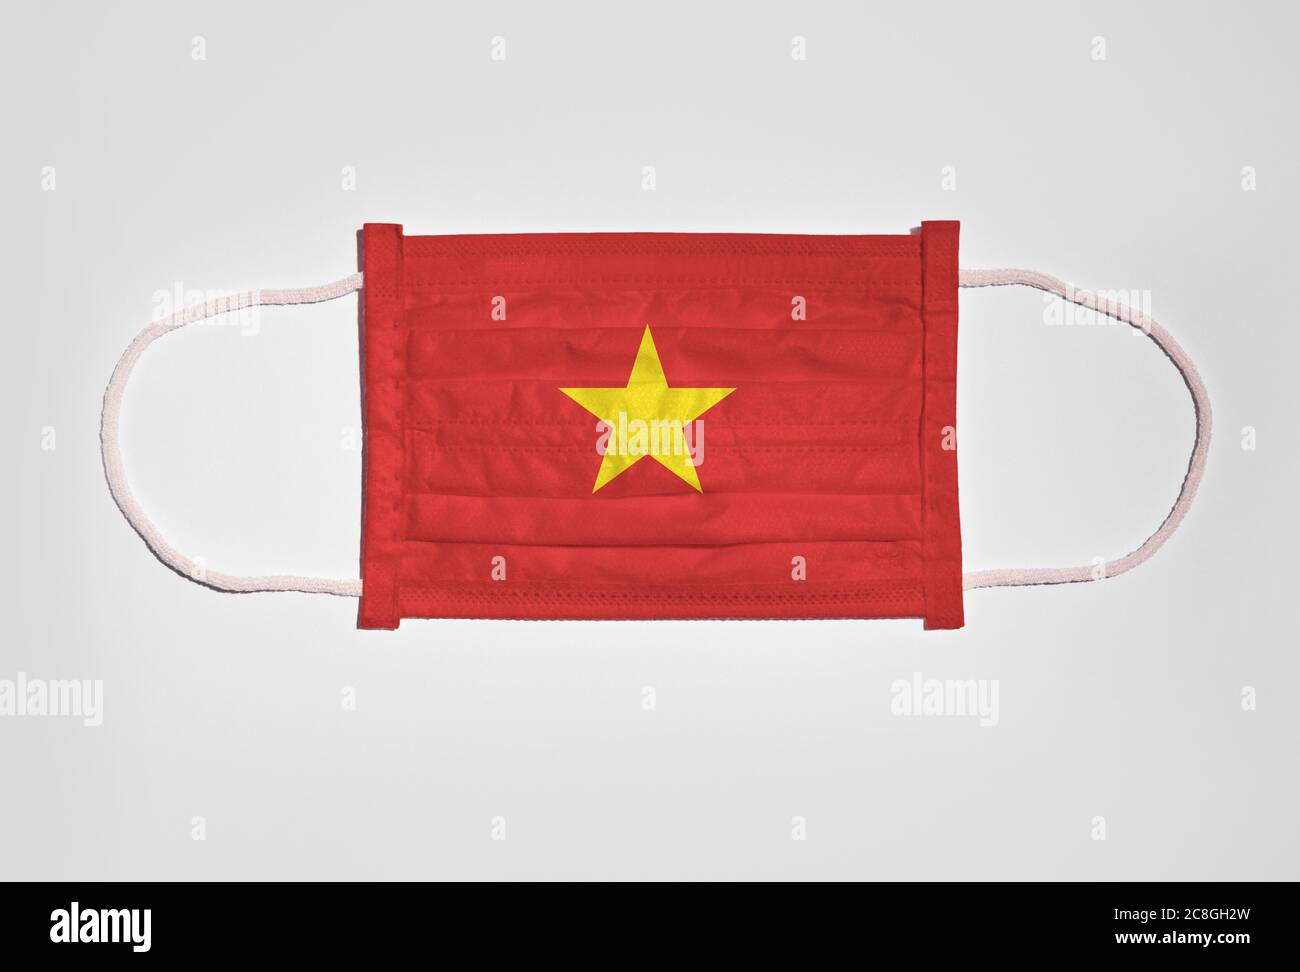 Symbolbild Corona Krise, Mundschutz, Atemmaske, Mund- und Nasenschutz mit  Flagge von Vietnam, weißer Hintergrund Stockfotografie - Alamy